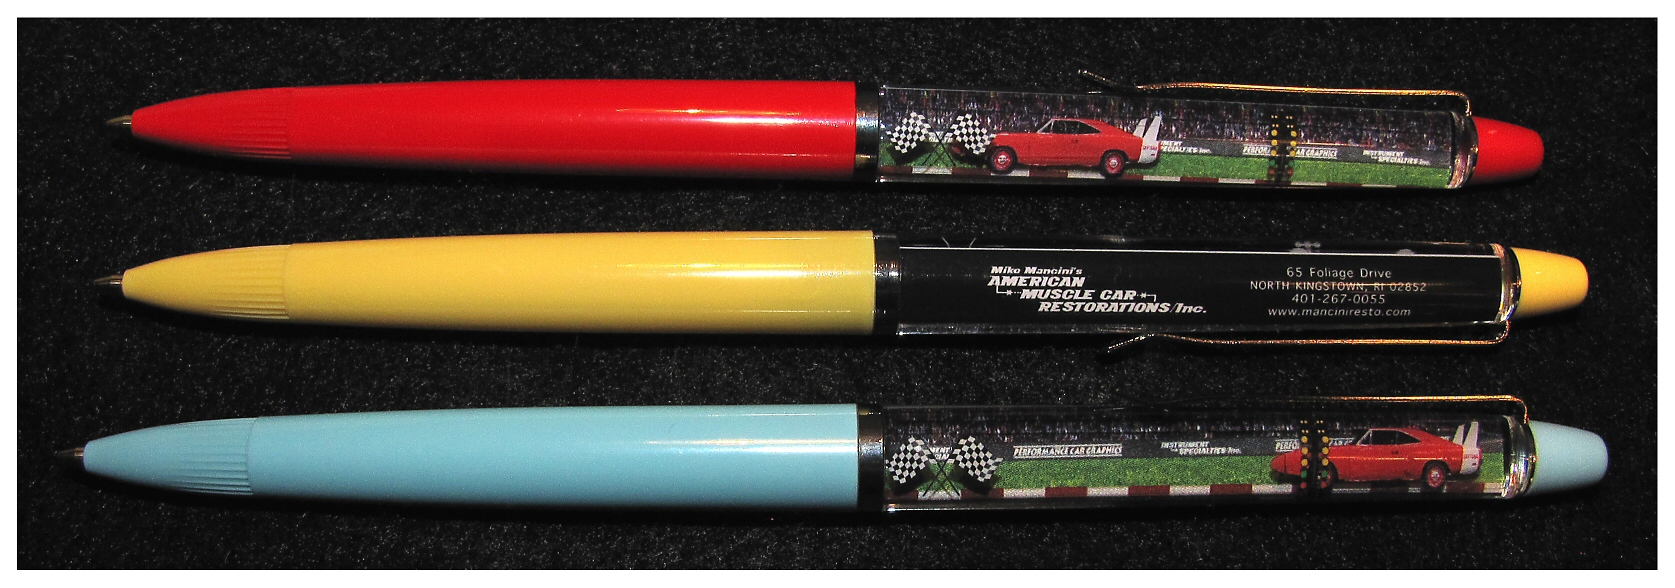 Collectible Daytona Floating Souvenir Pens